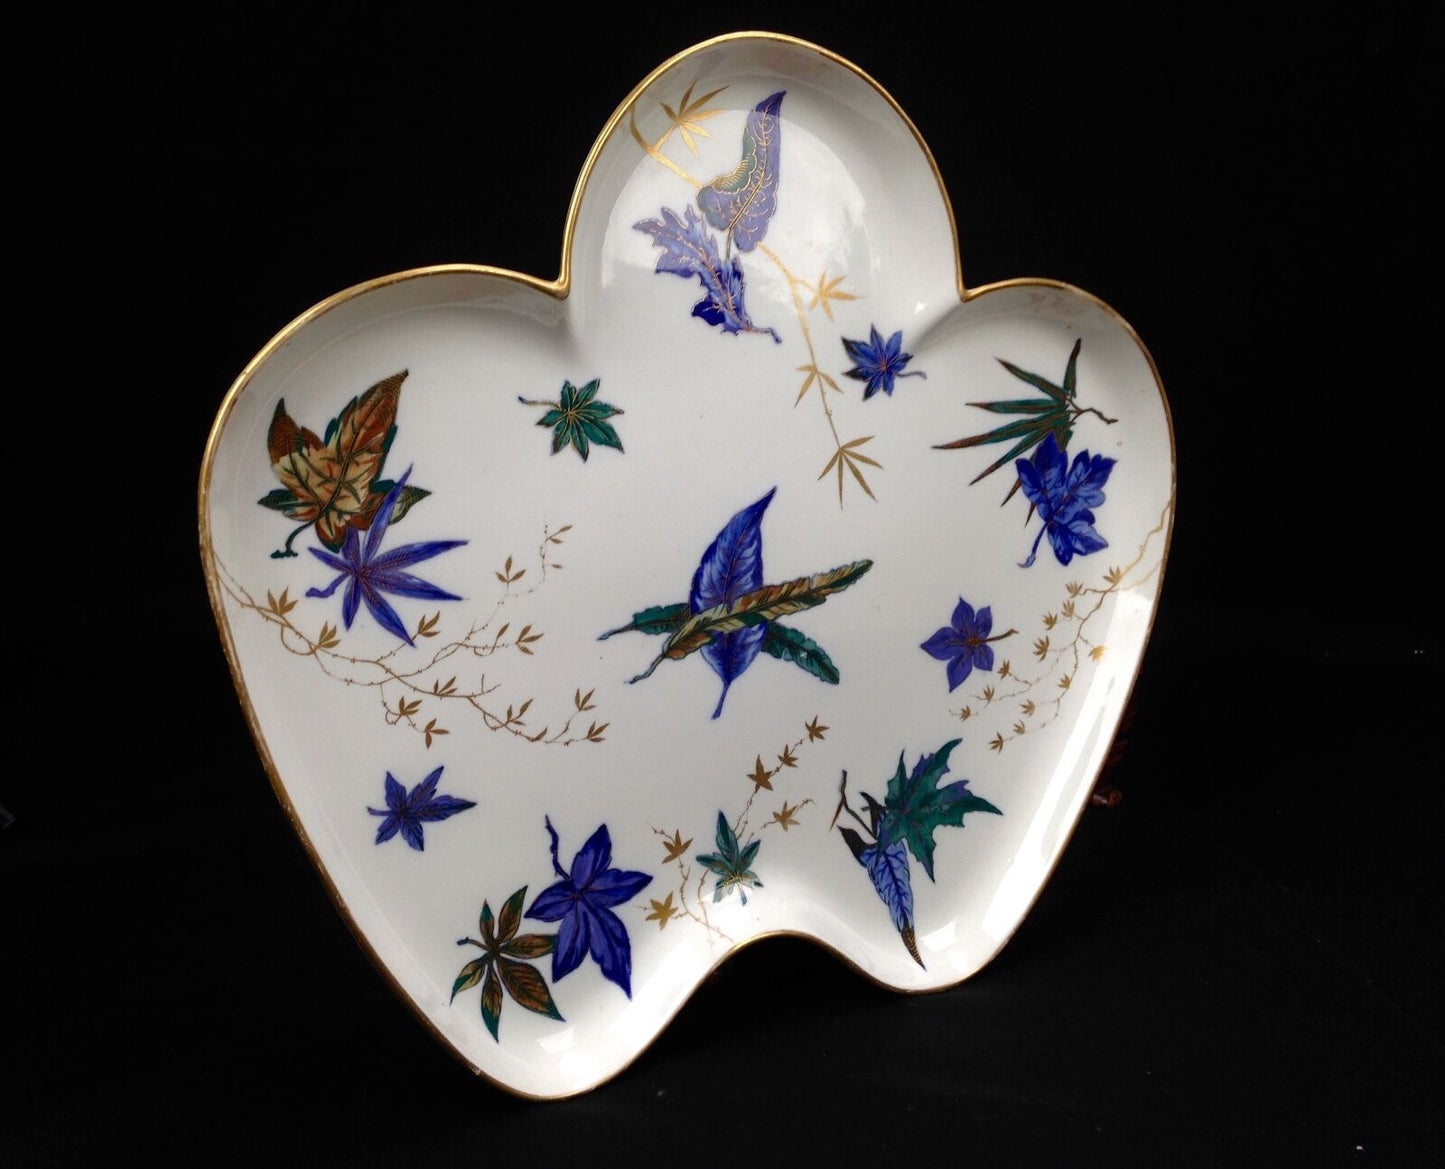 Antique Royal Worcester Cabaret Tea Tray / Blue Leaf Design / Large / Victorian